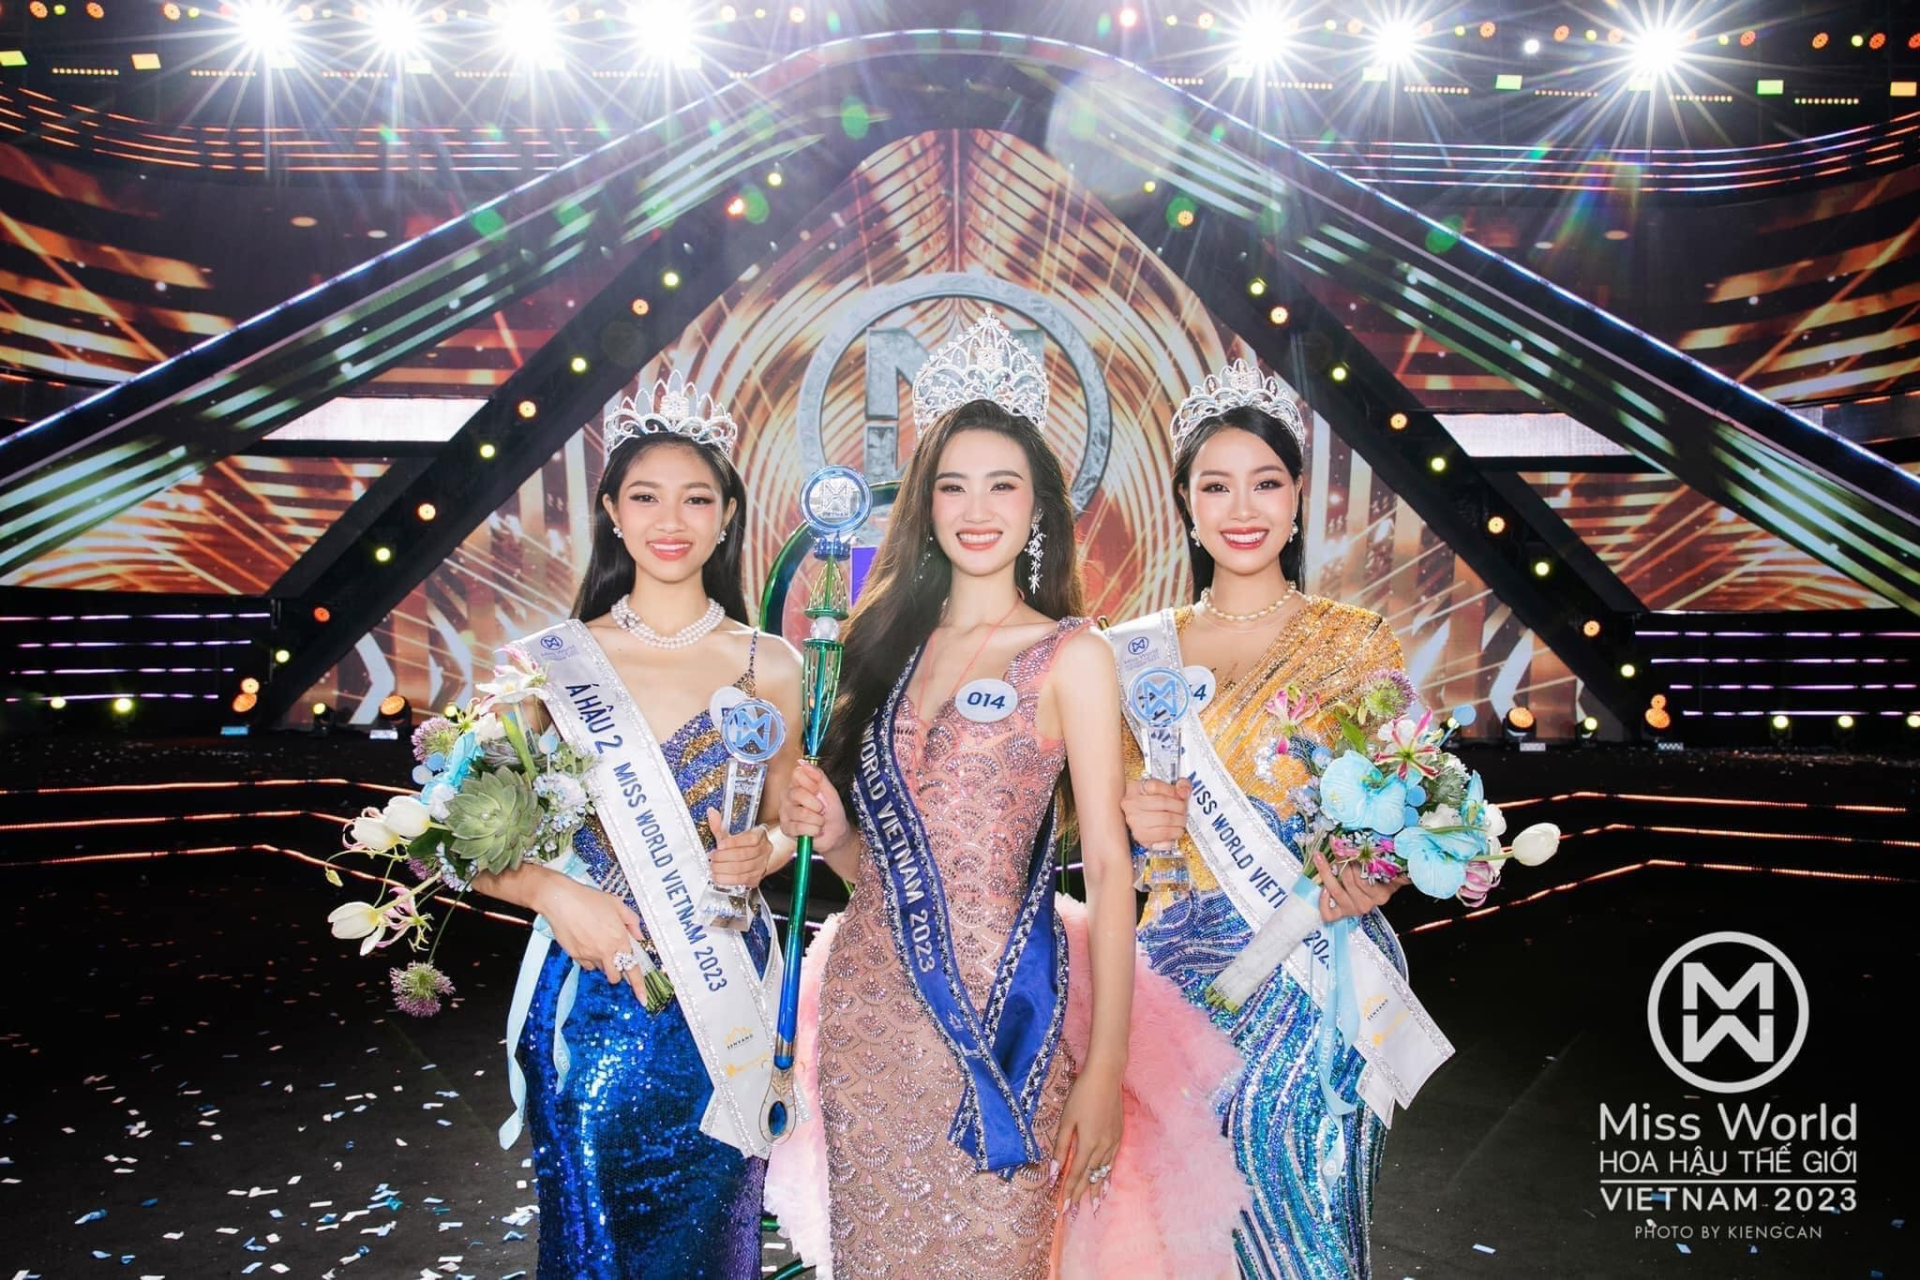 Huỳnh Minh Kiên được xướng tên ở Ngôi vị Á hậu 2 Miss World Vietnam 2023. Nhan sắc của người đẹp này được nhiều khán giả chú ý.